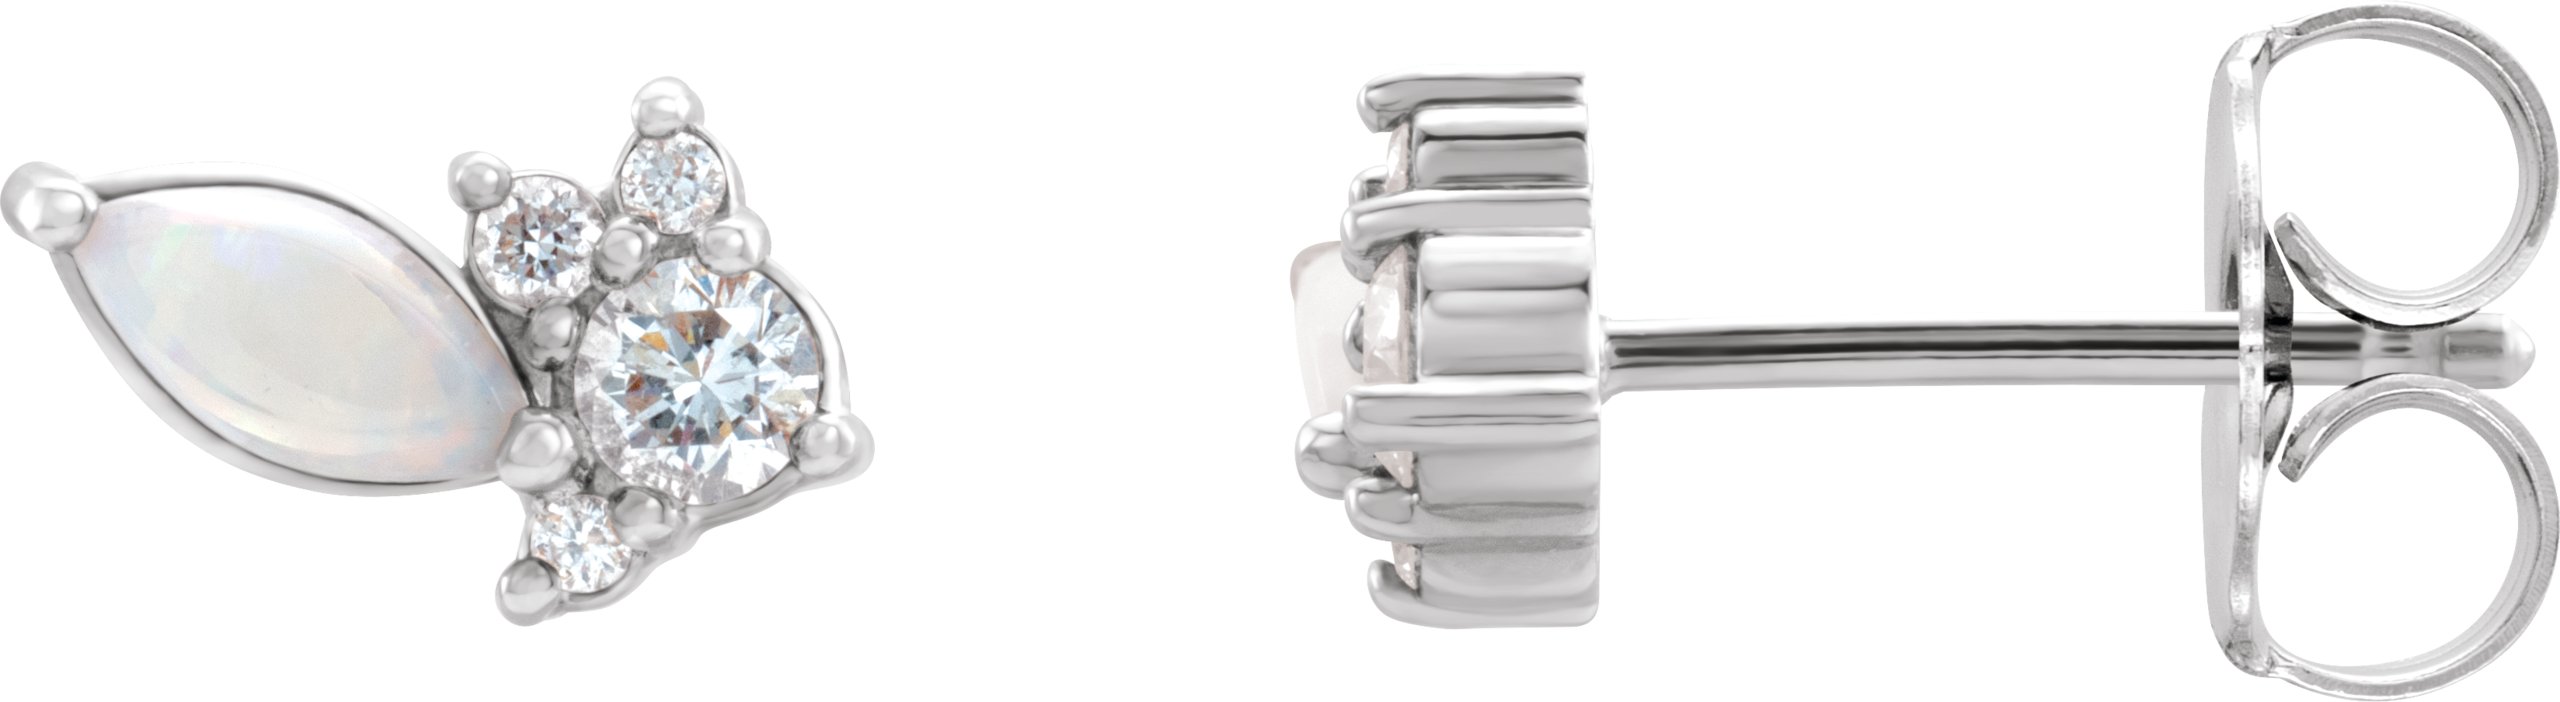 14K White Australian Opal and .167 CTW Diamond Cluster Earrings Ref. 16635738